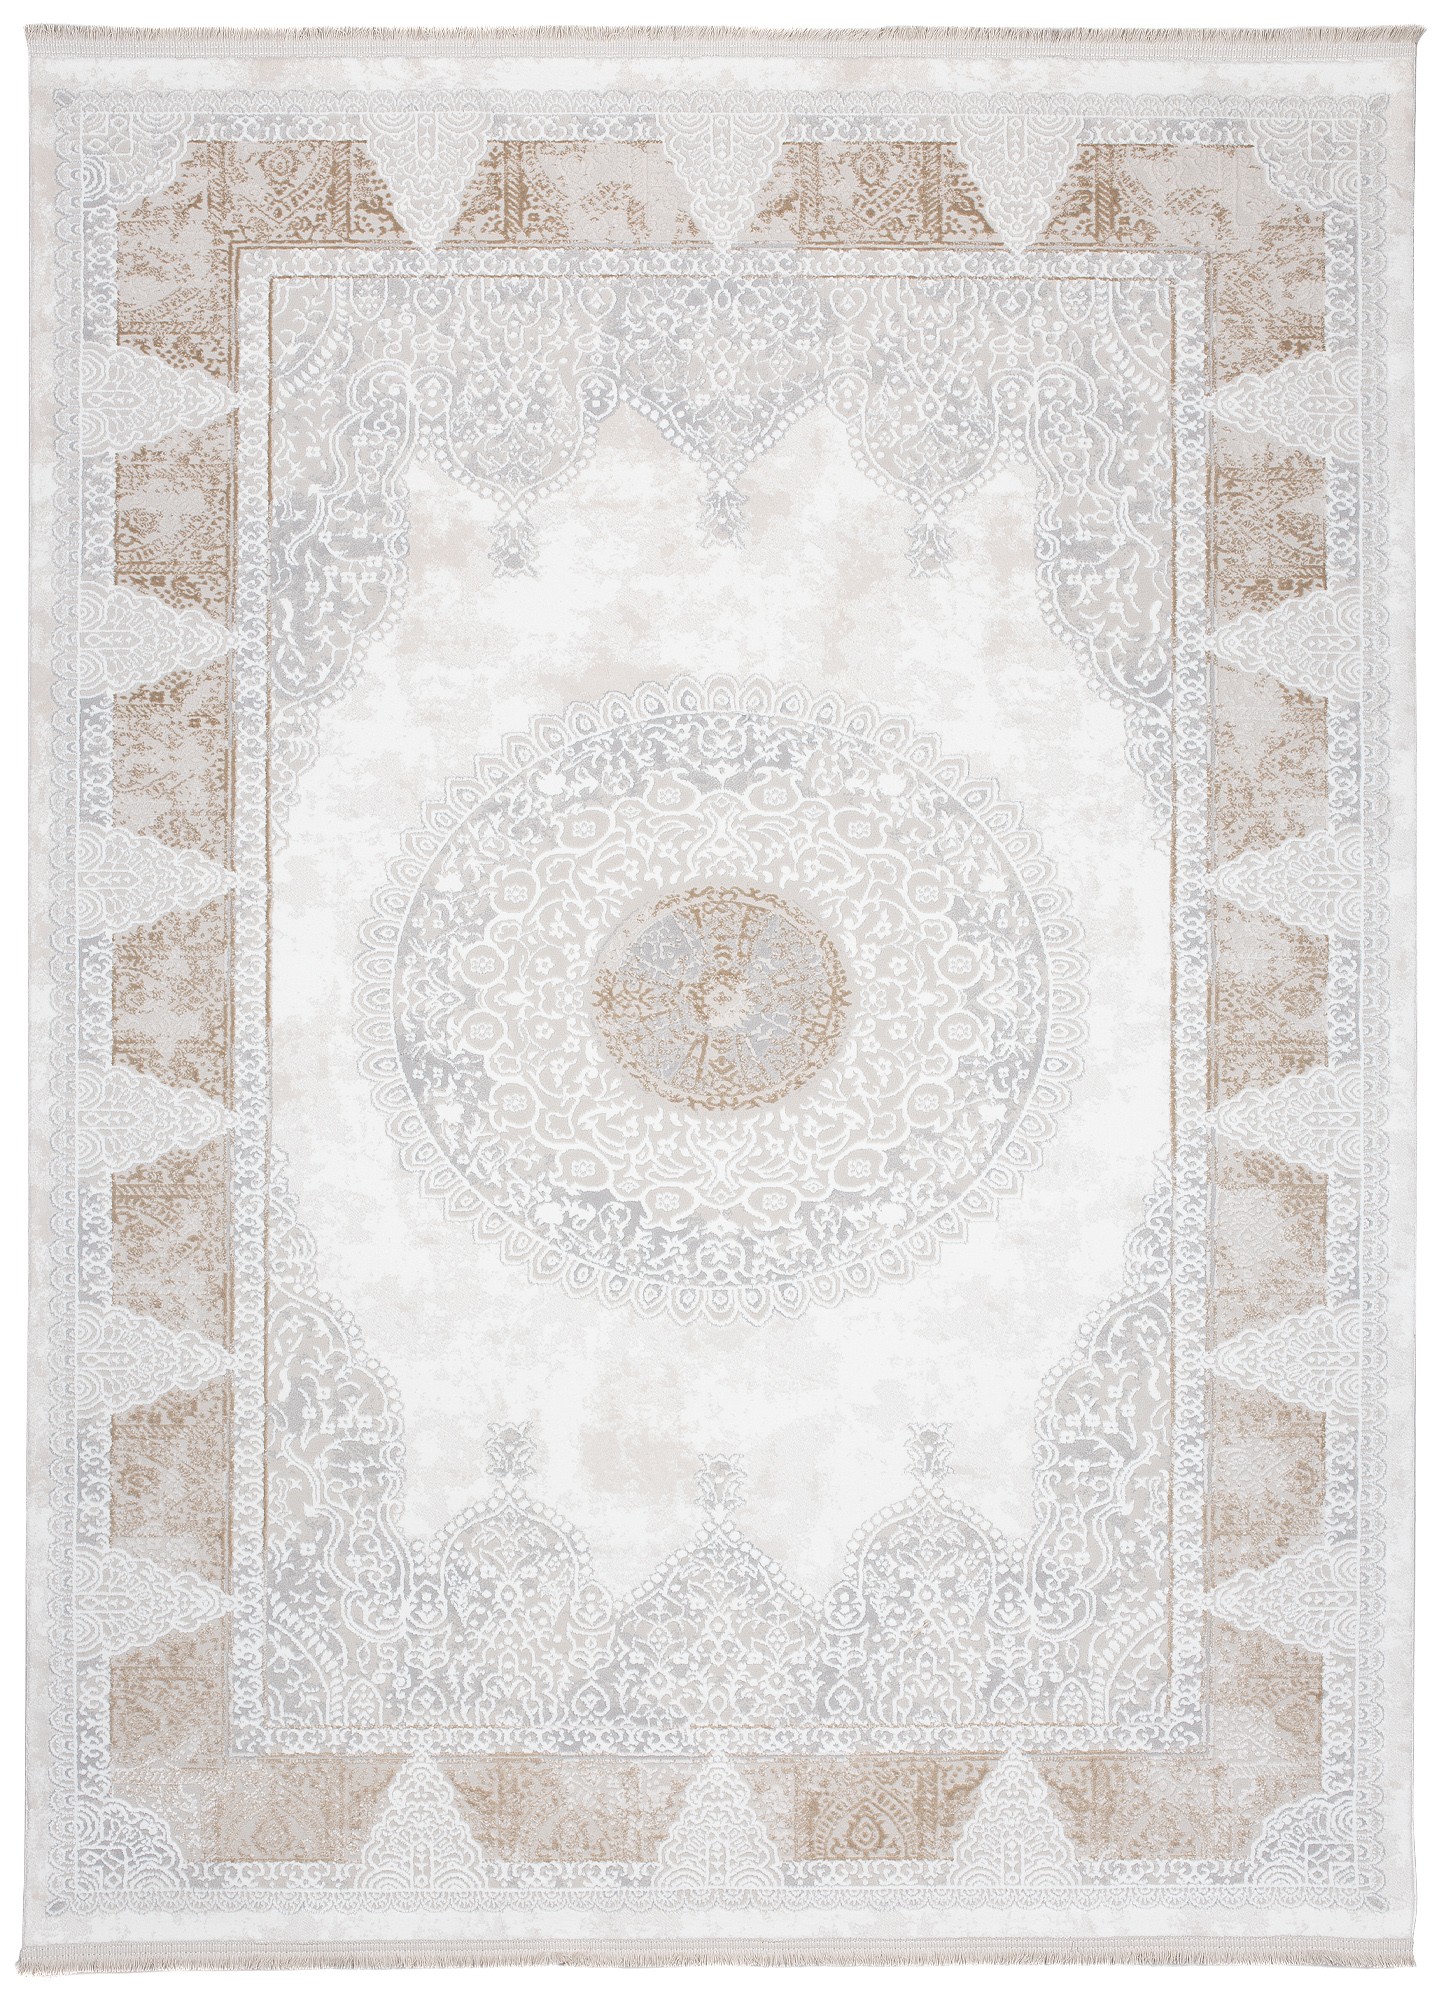 domtextilu.sk Jemný vintage koberec s béžovými ornamentmi 68218-243152